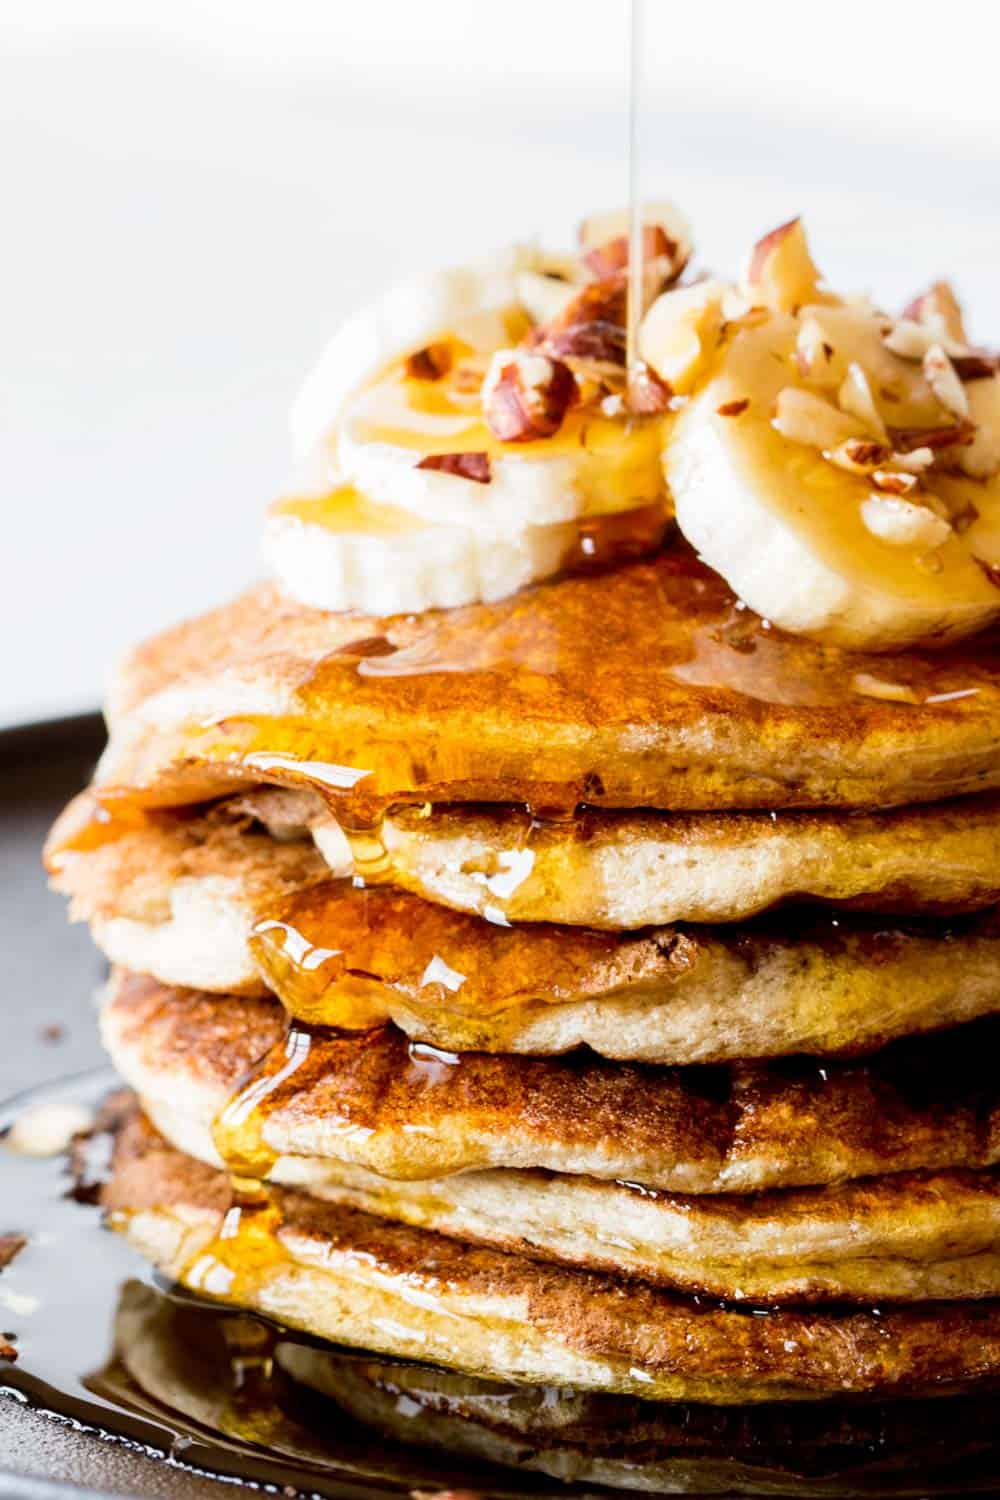 Flourless banana pancakes